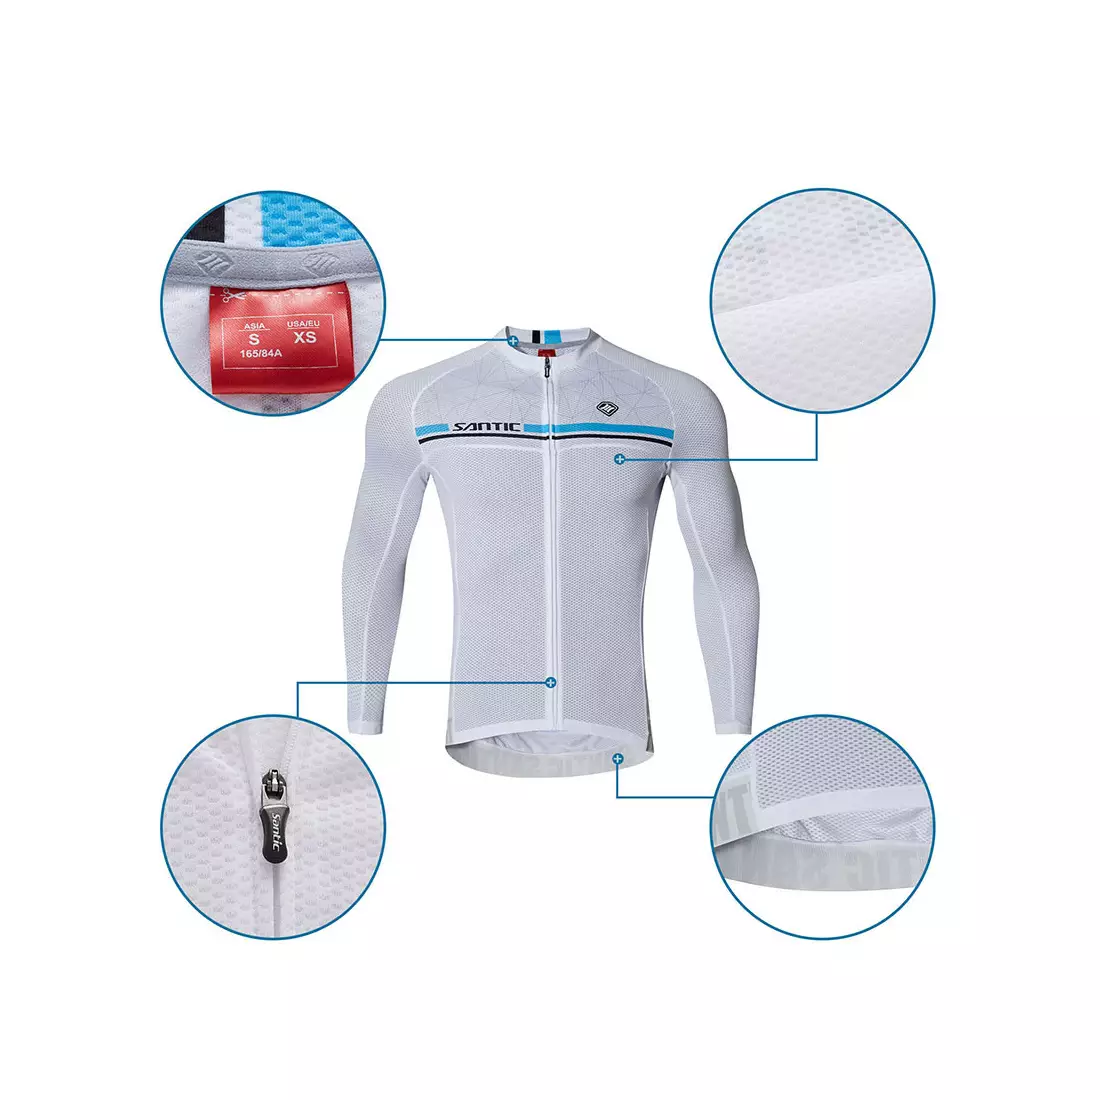 Pánsky cyklistický dres SANTIC s dlhým rukávom, biely WM7C01079W